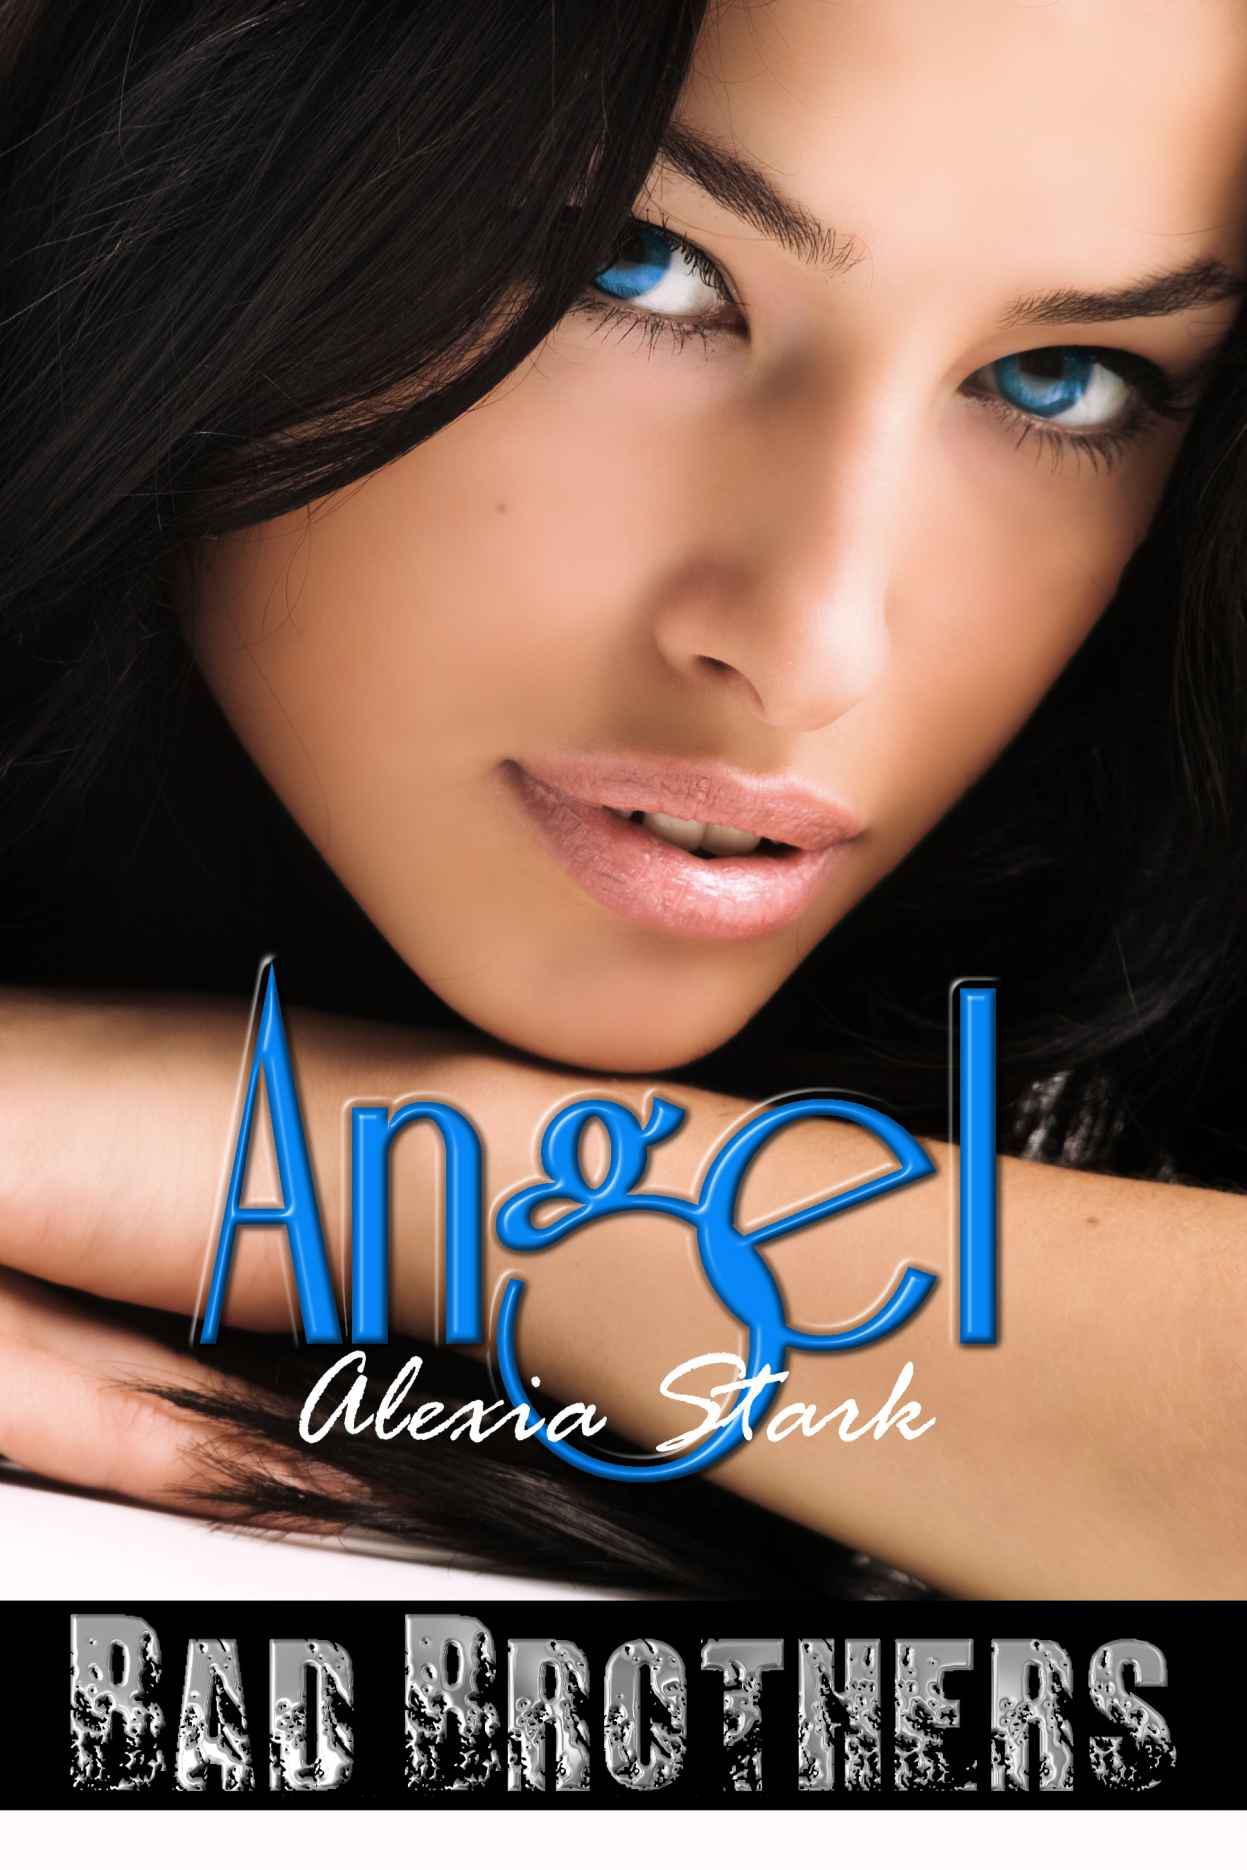 Angel by Stark, Alexia